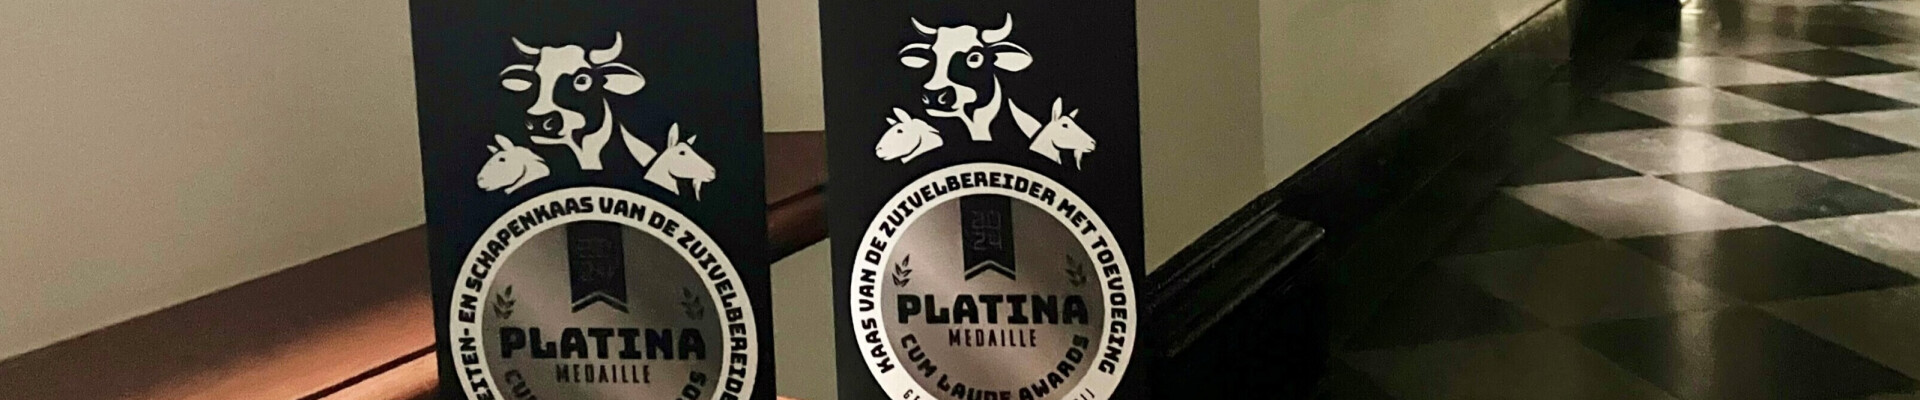 Platina Award voor koe- en geitenkaas van La Trappe